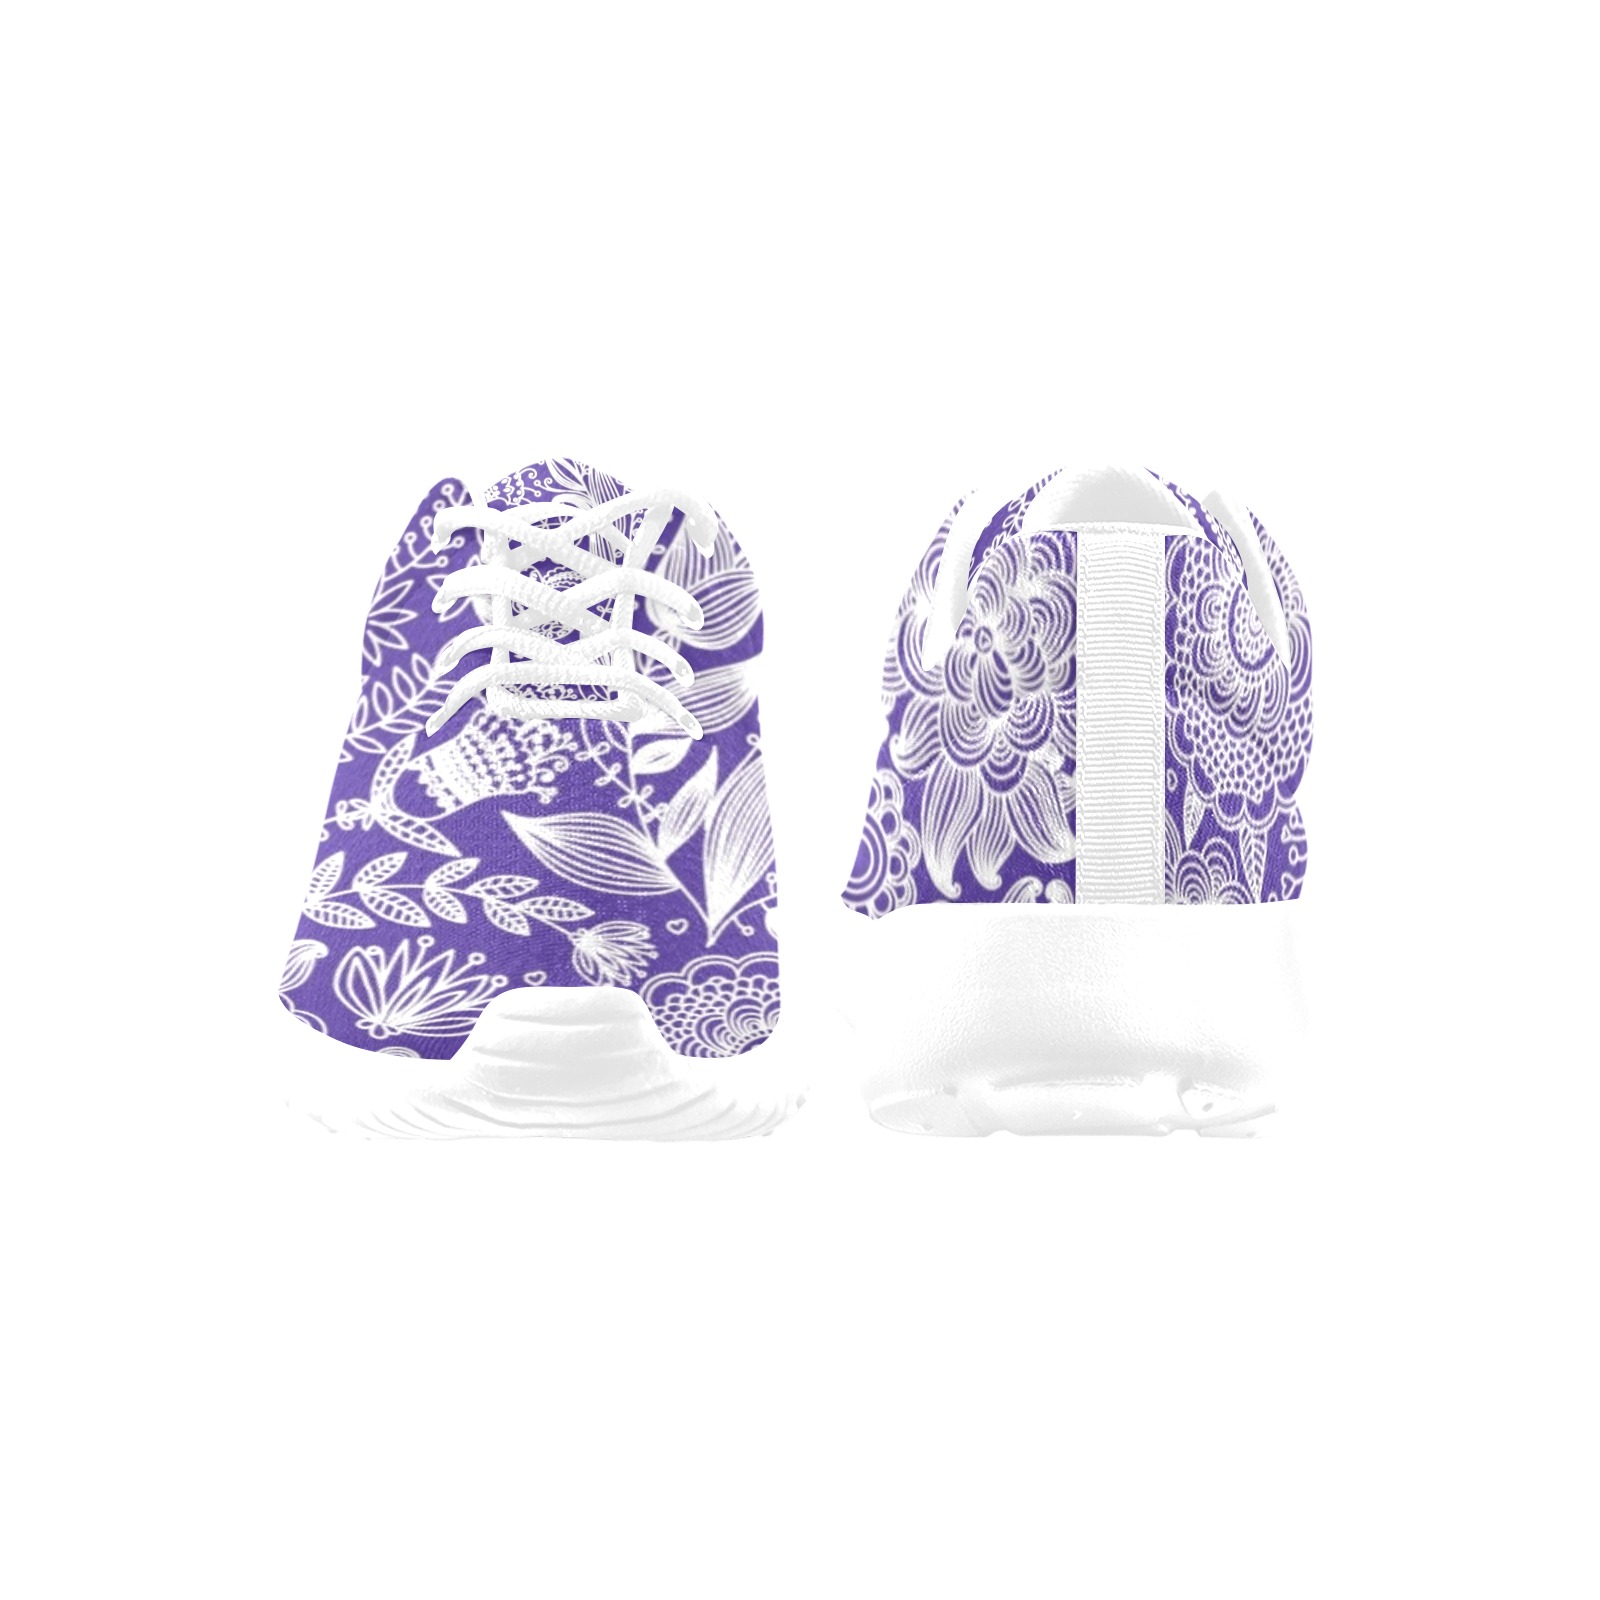 Elaborate Purple Floral Women's Athletic Shoes (Model 0200)